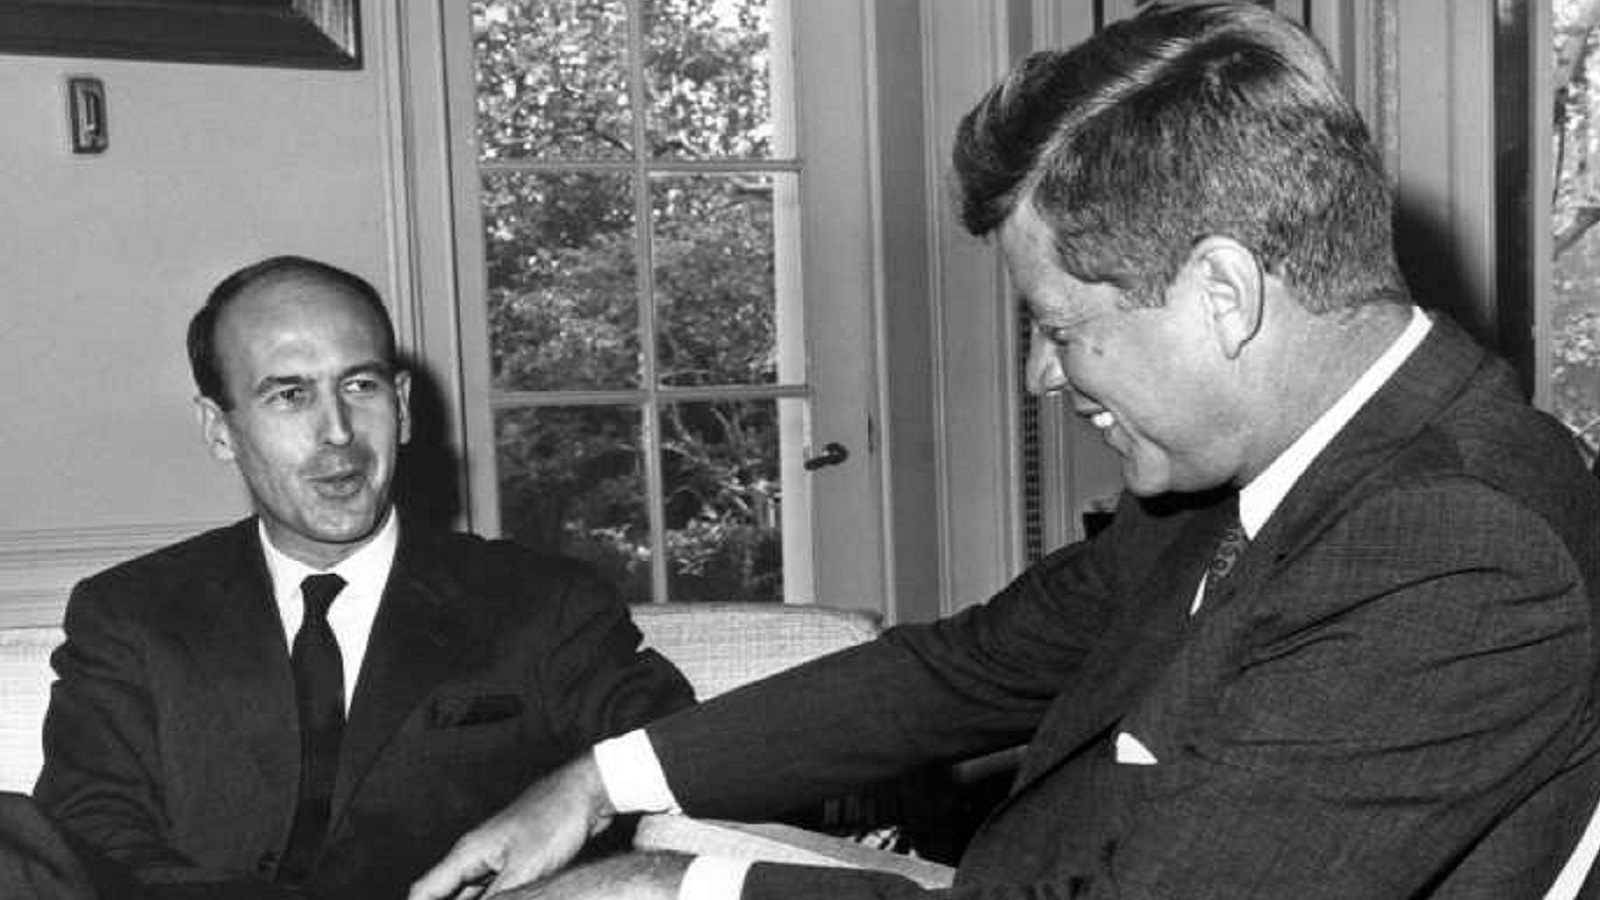 ديسكار ديستان حمل لقب "كينيدي فرنسا" بسبب توقه للتجديد وصداقته مع الرئيس الاميركي جون كينيدي